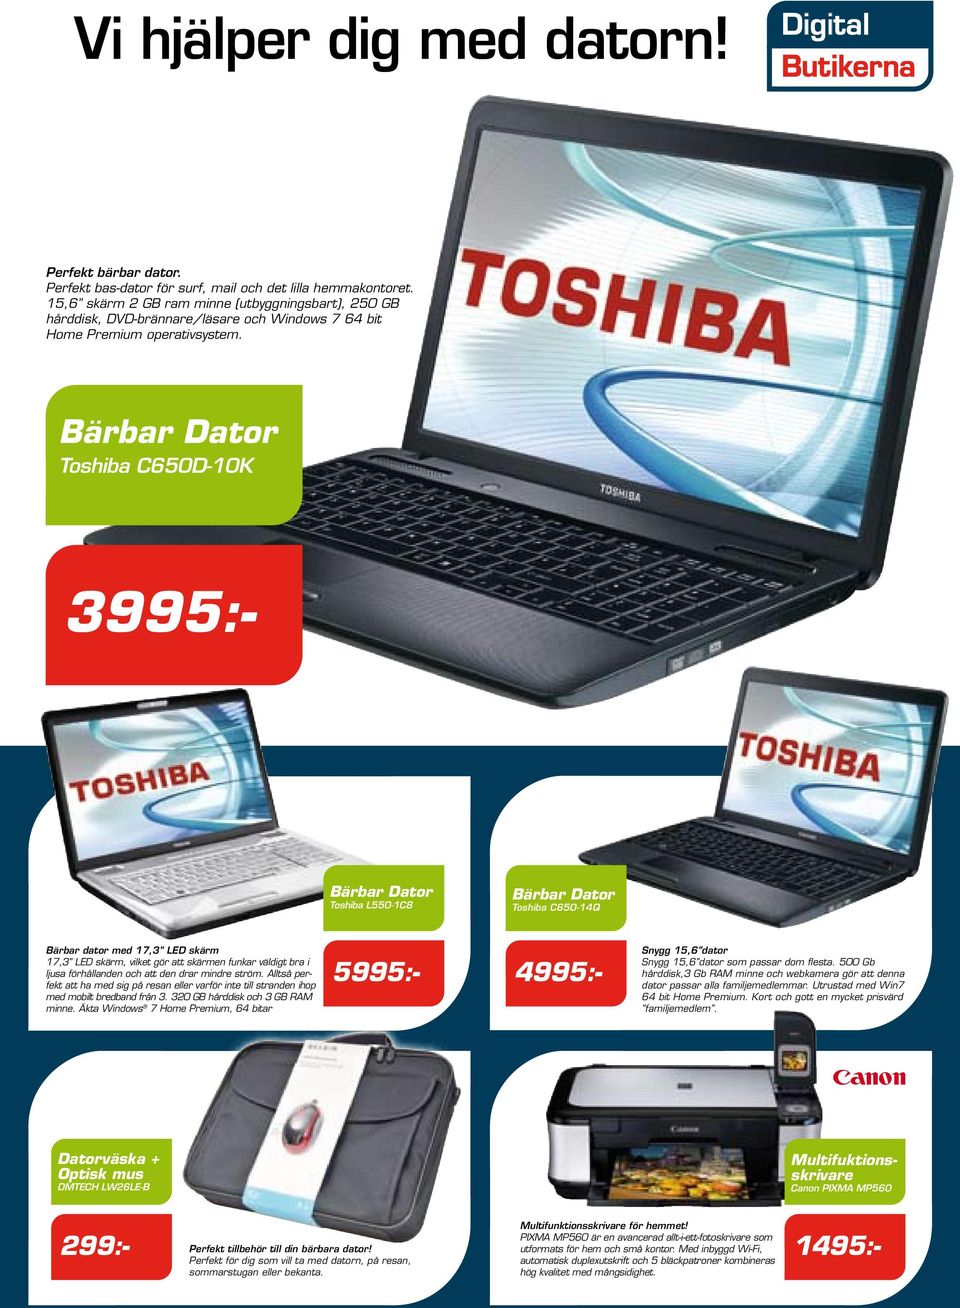 Bärbar Dator Toshiba C650D-10K 3995:- Bärbar Dator Toshiba L550-1C8 Bärbar Dator Toshiba C650-14Q Bärbar dator med 17,3 LED skärm 17,3 LED skärm, vilket gör att skärmen funkar väldigt bra i ljusa